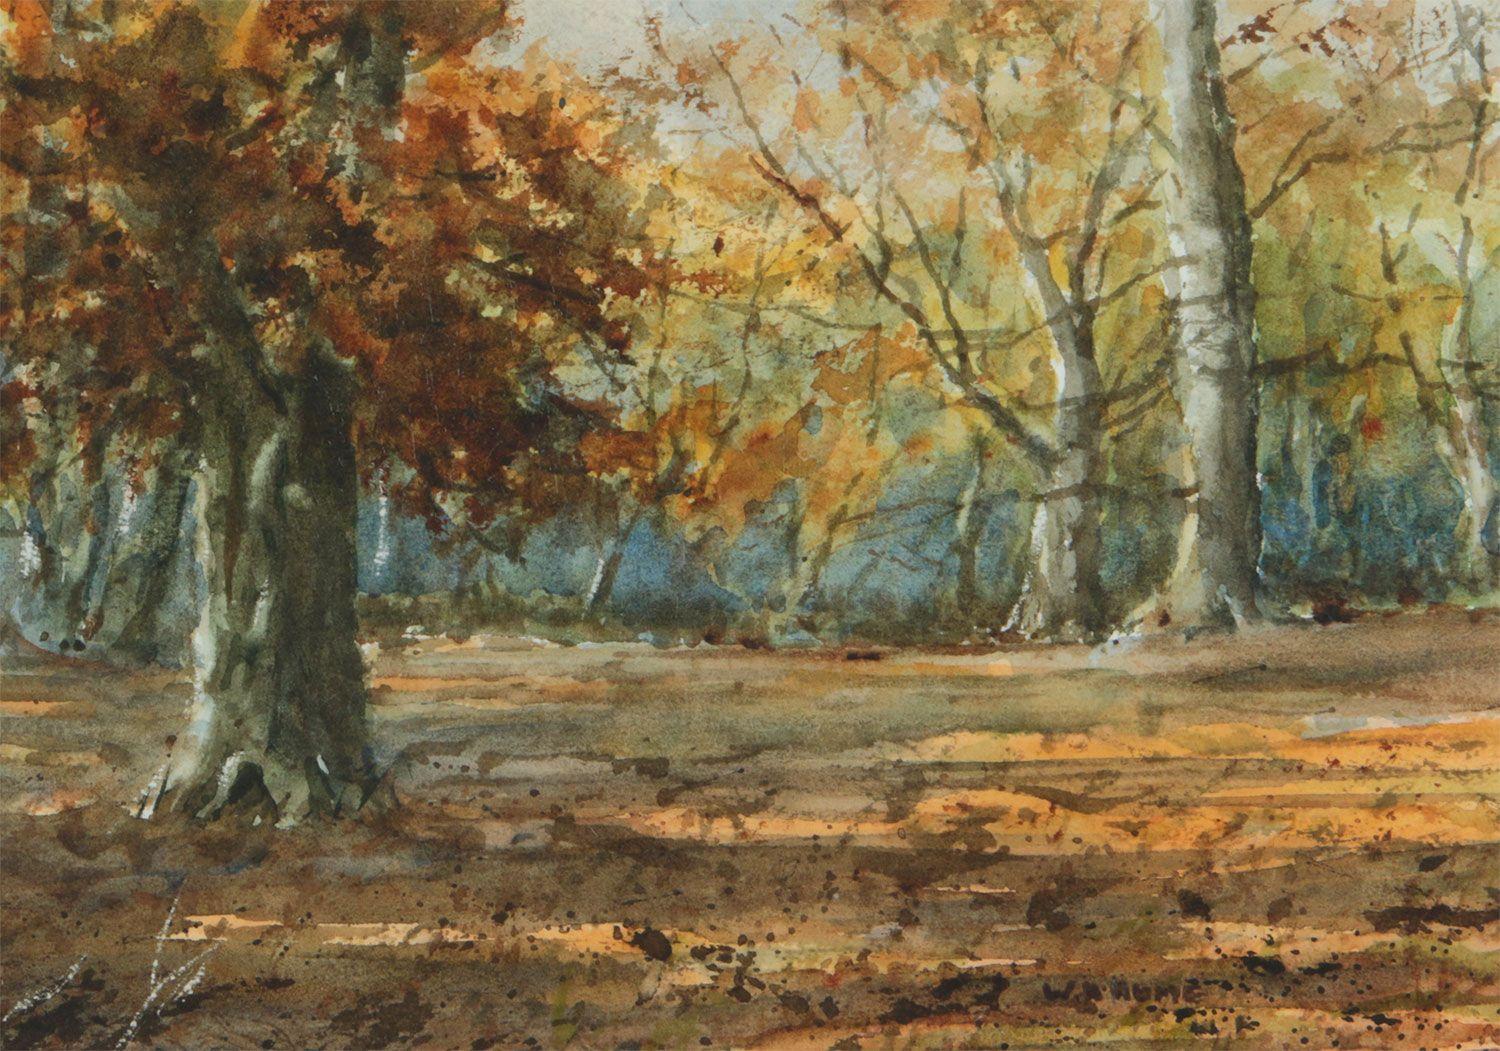 Dessin à l'aquarelle du 19e siècle représentant des arbres automnaux dans une forêt d'Irlande du Nord, par l'artiste du 19e siècle William Hume 

L'œuvre d'art mesure 11 x 8 pouces 
Le cadre mesure 17 x 13 pouces 

Présenté dans un blanc frais et